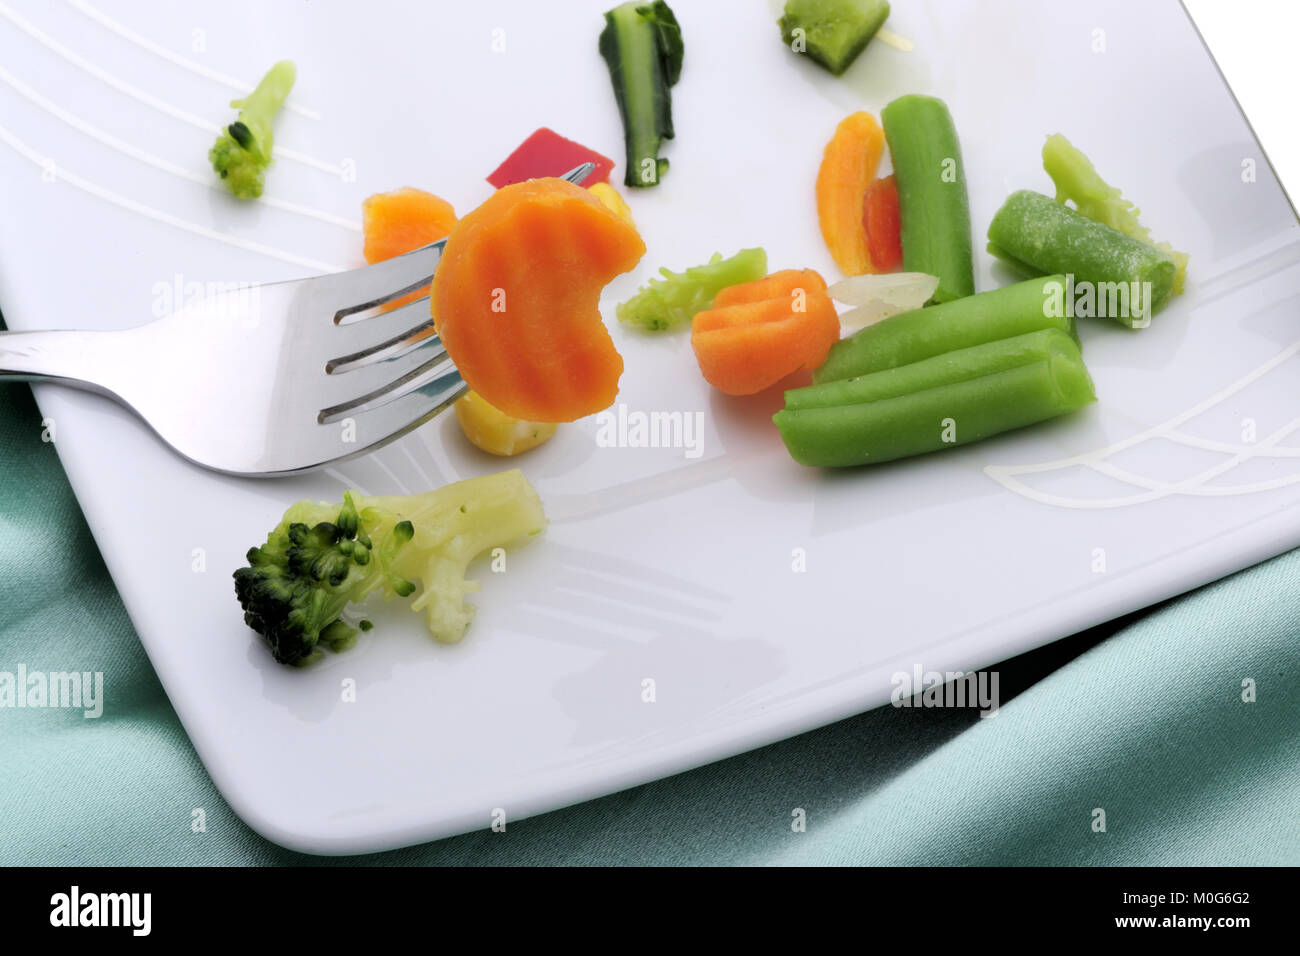 food, healthy, vegetables, vegan, low calorie, lifestyle, cutlery, plate,food, healthy, vegetables, vegan, low calorie, lifestyle, cutlery, plate, Stock Photo